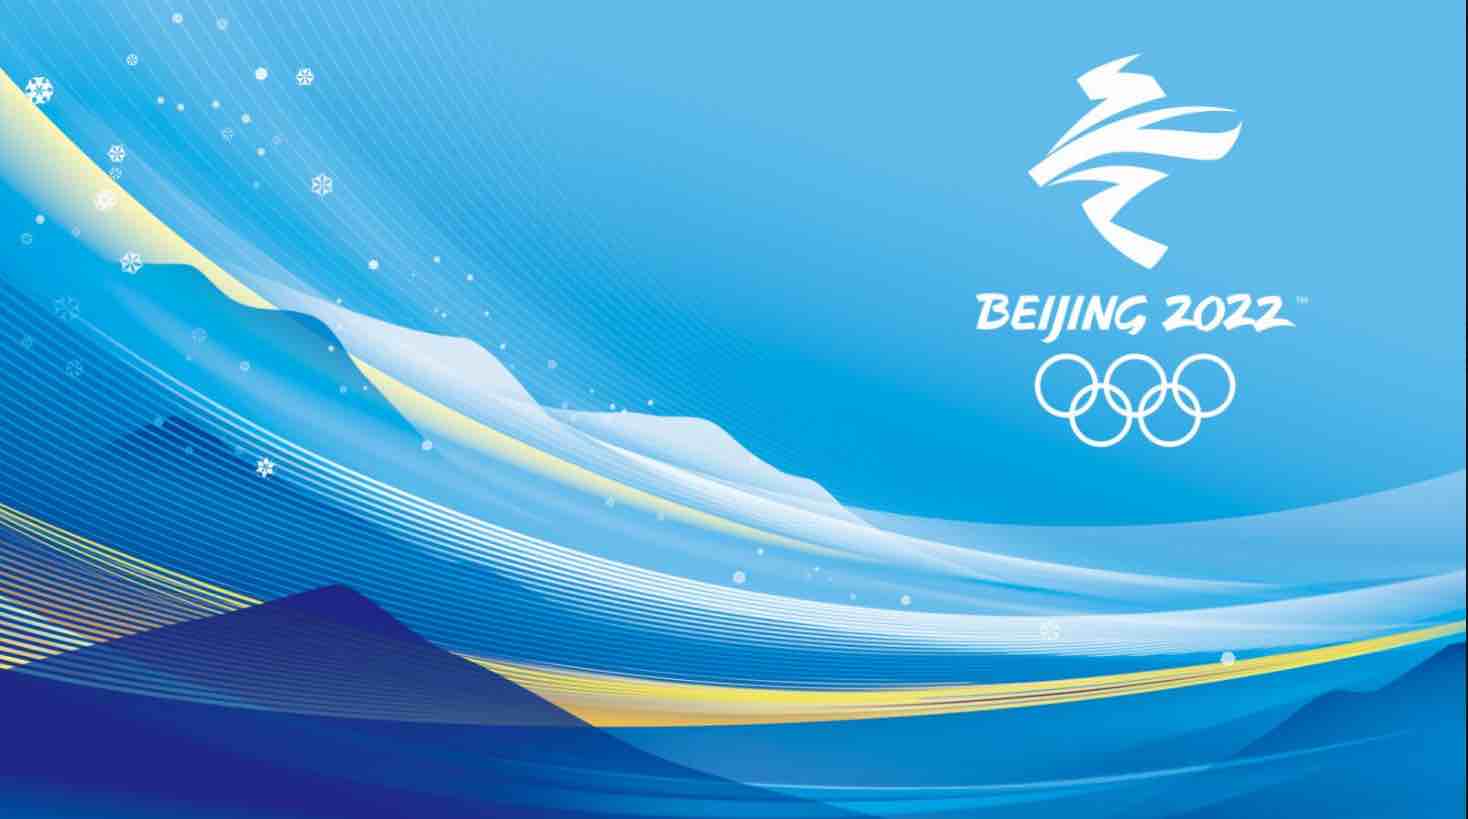 北京2022年冬奥会和冬残奥会制服装备视觉外观设计方案开启征集